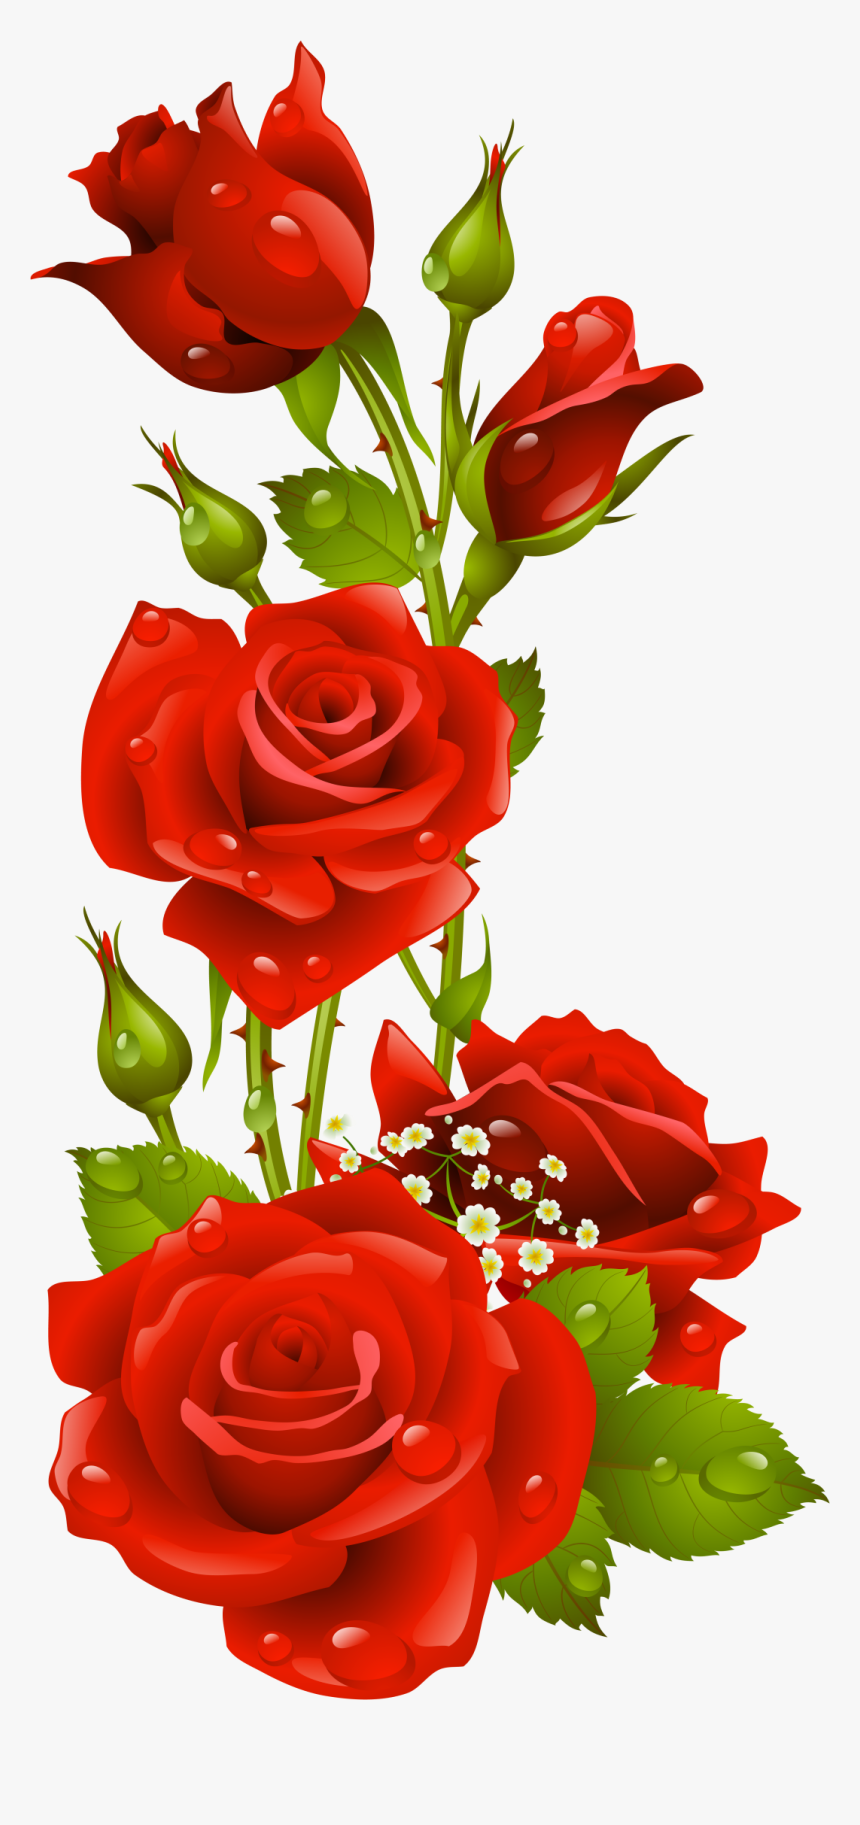 Papel De Carta Em Rosas Vermelhas